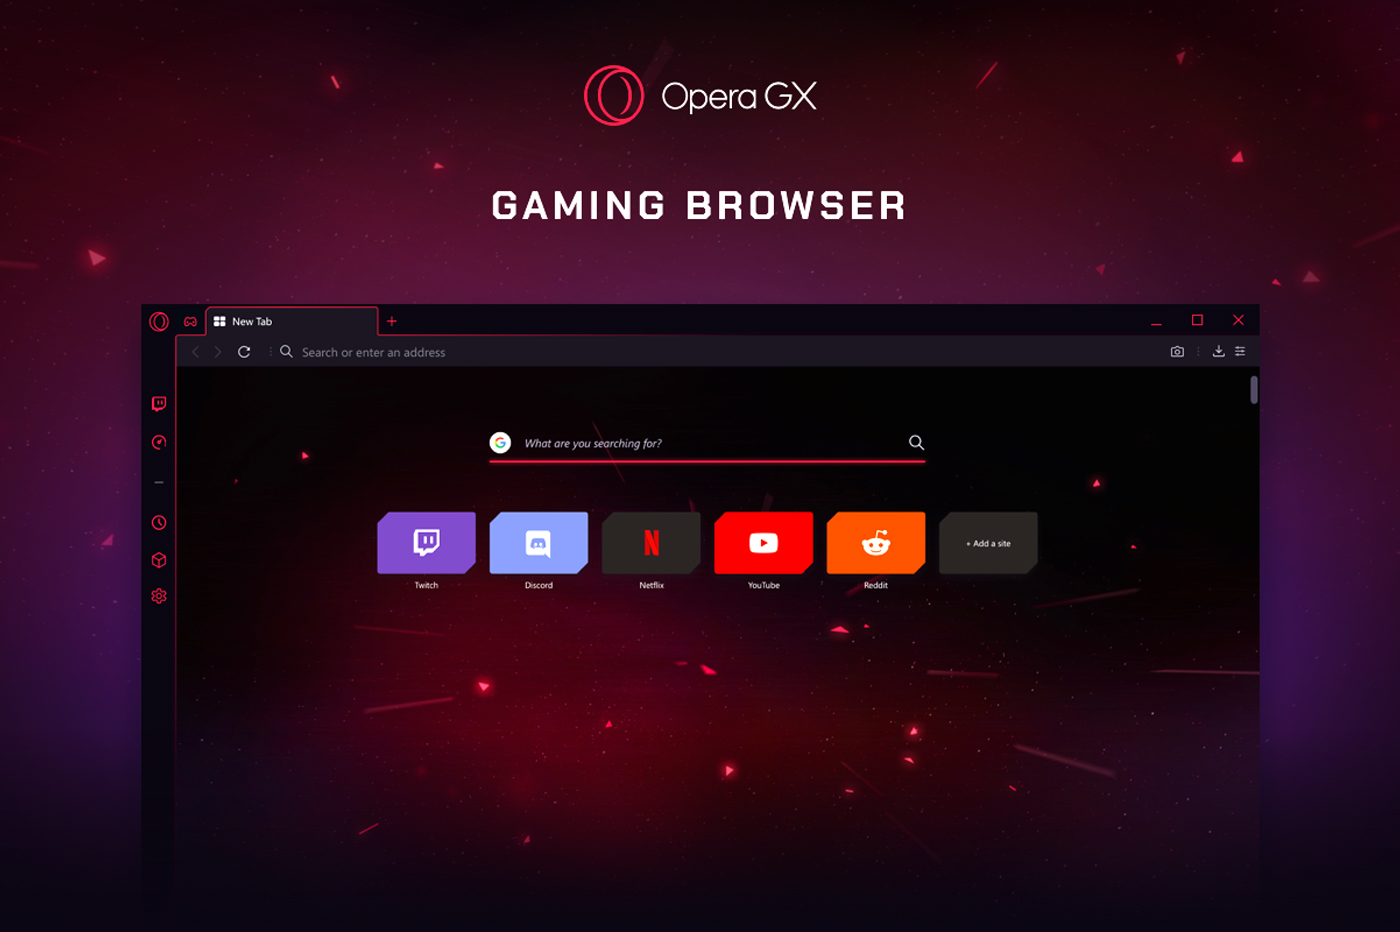 Le navigateur Opera GX joue désormais de la musique qui s'adapte à votre navigation